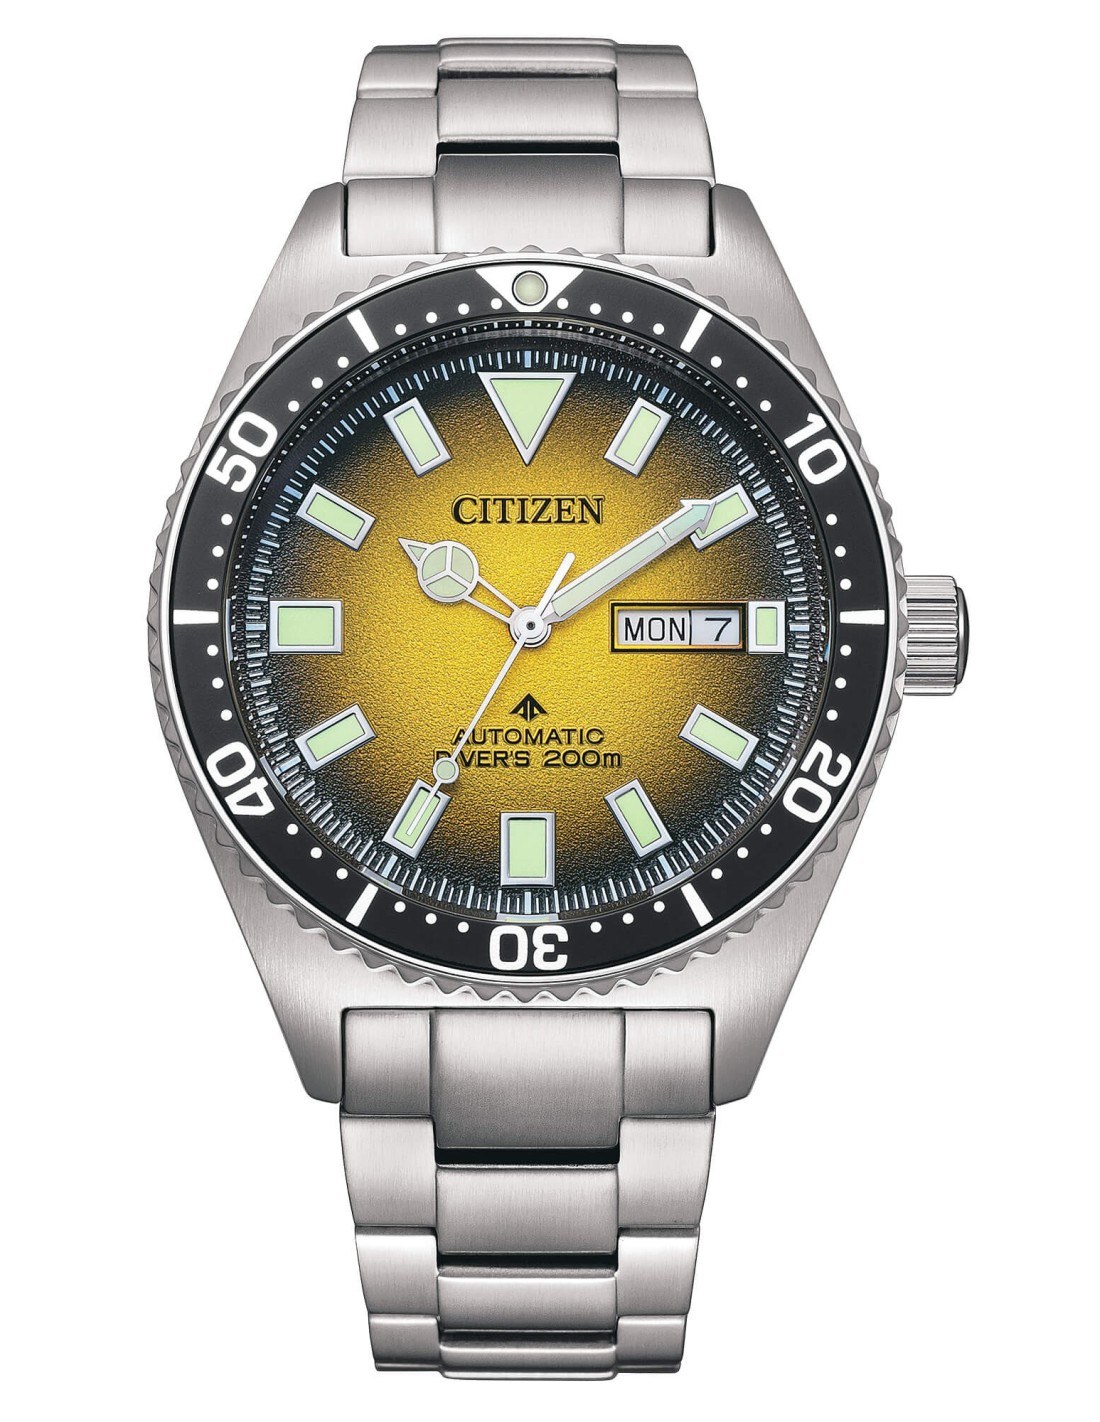 Orologio citizen promaster automatic diver s ny0120 52x